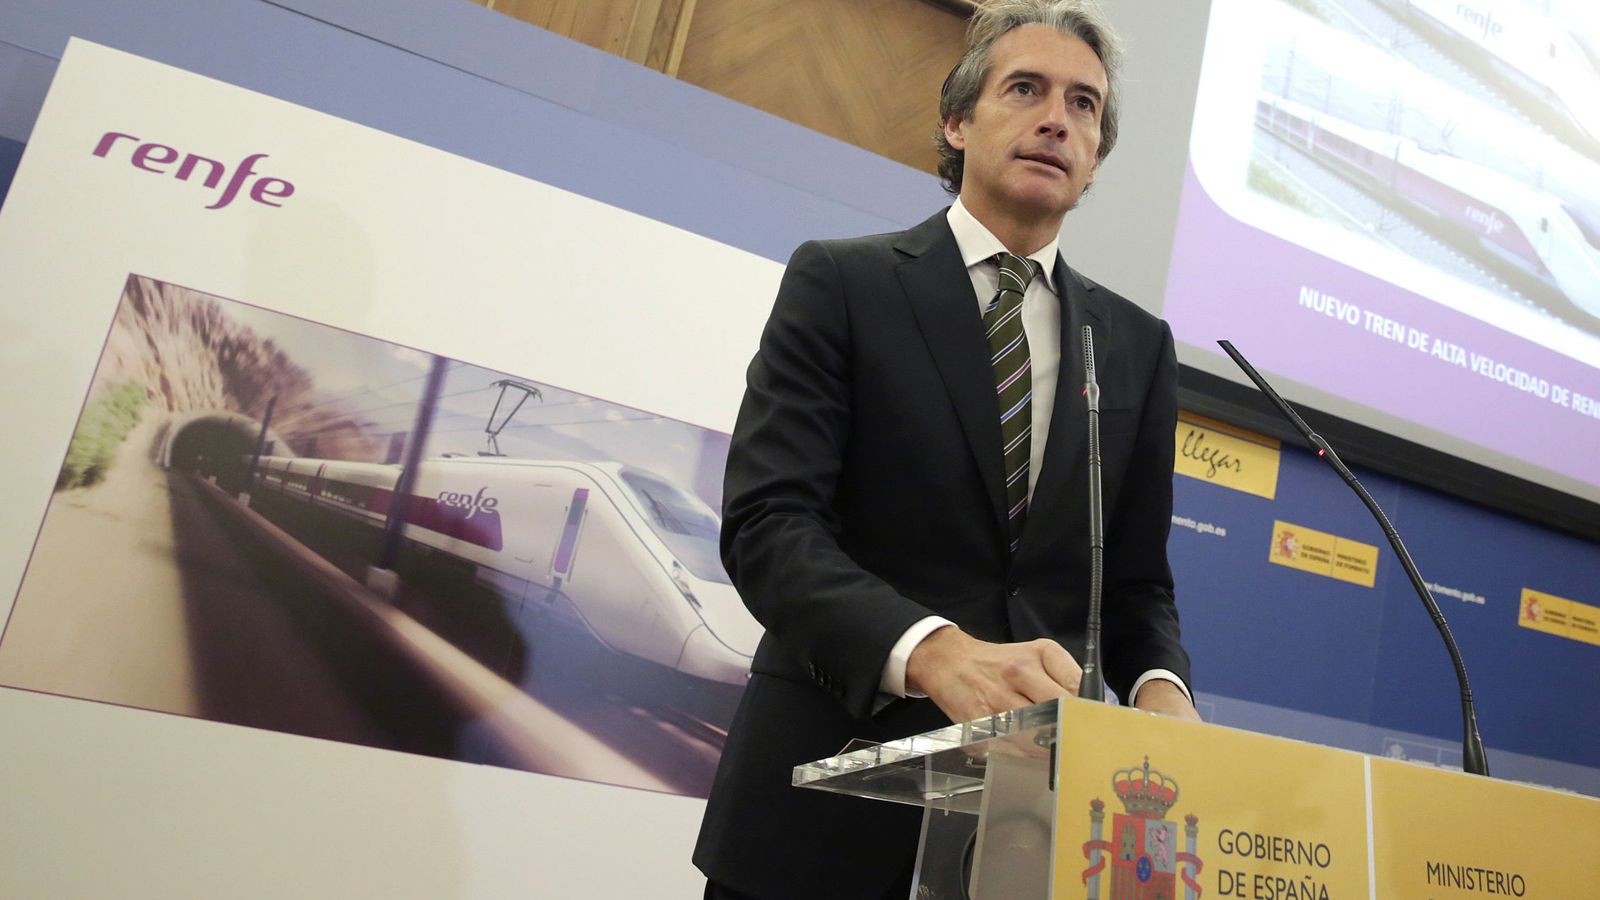 Foto: Íñigo de la serna comparece para dar a conocer el ganador del contrato de trenes de alta velocidad